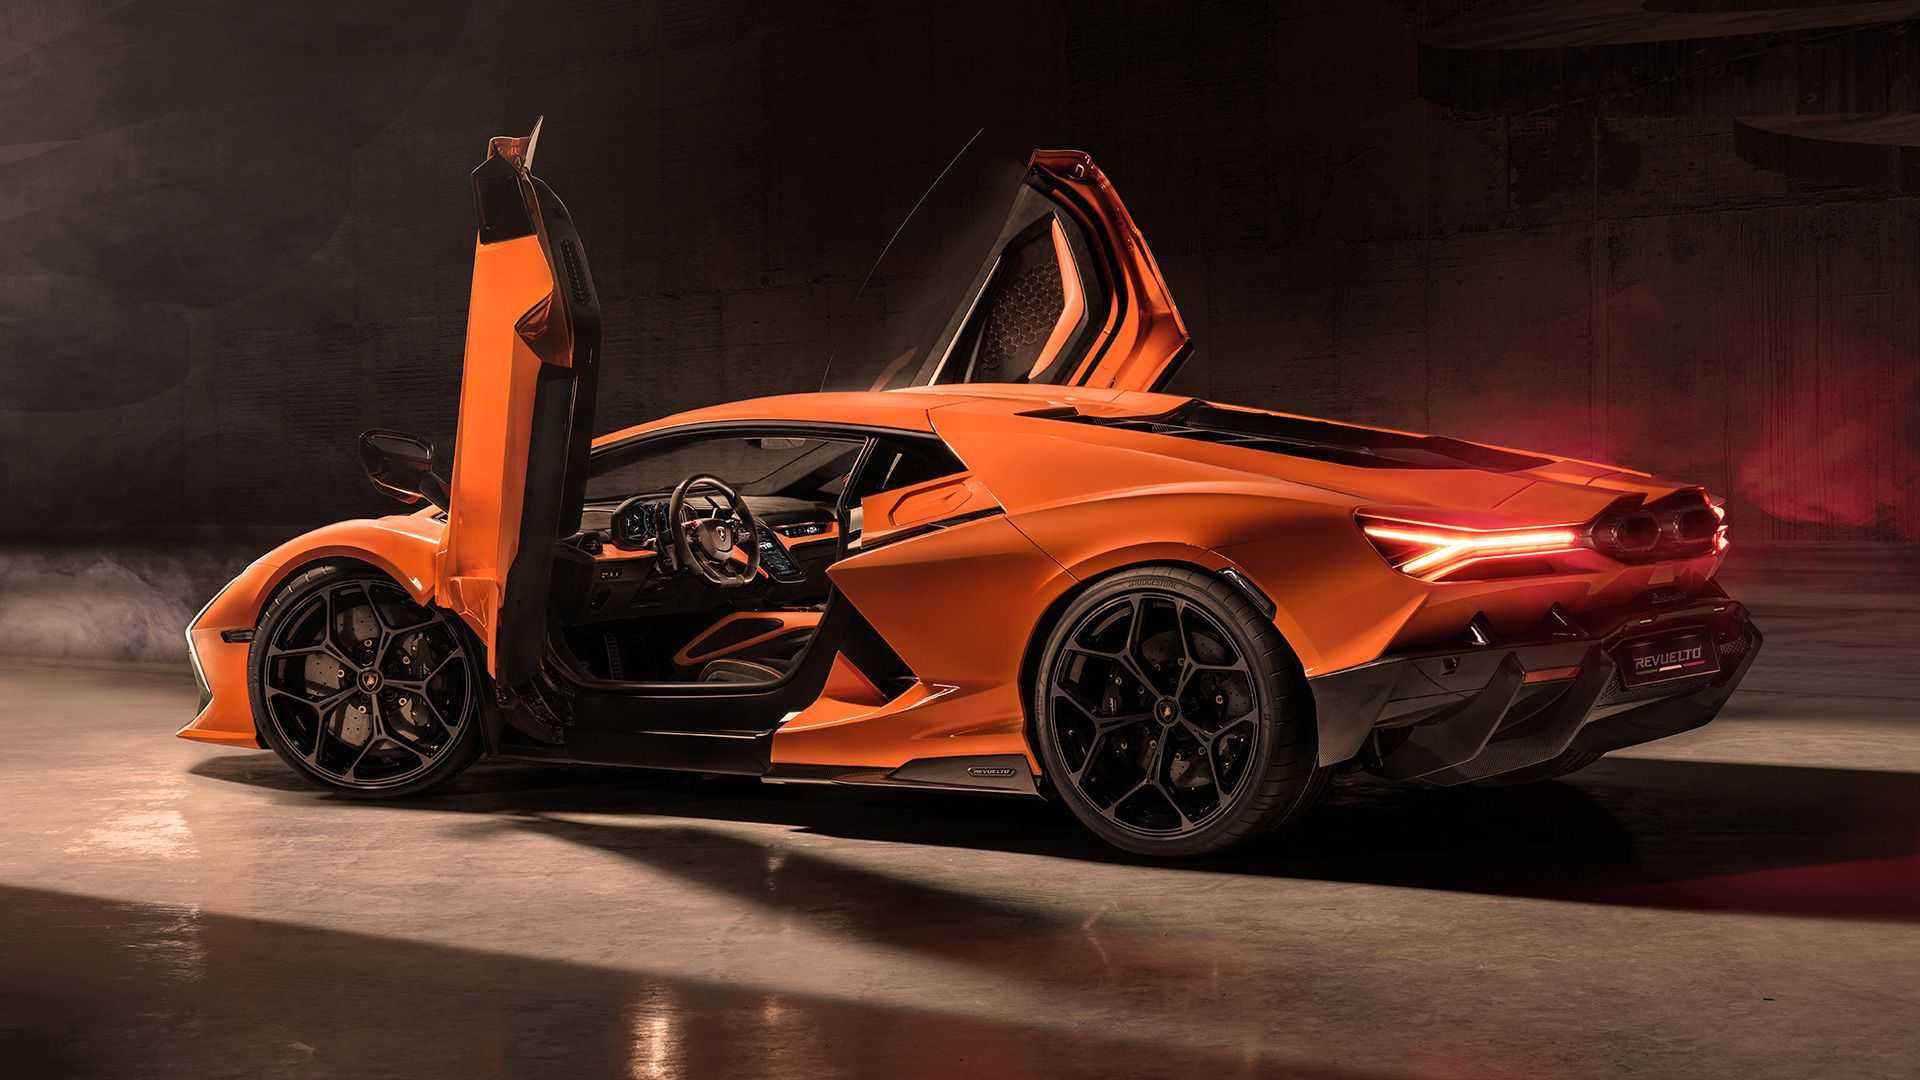 Ra mắt Lamborghini Revuelto thế chỗ Aventador: Siêu xe mạnh nhất lịch sử hãng nhưng đi phố chỉ ngang cơ Civic - ảnh 3